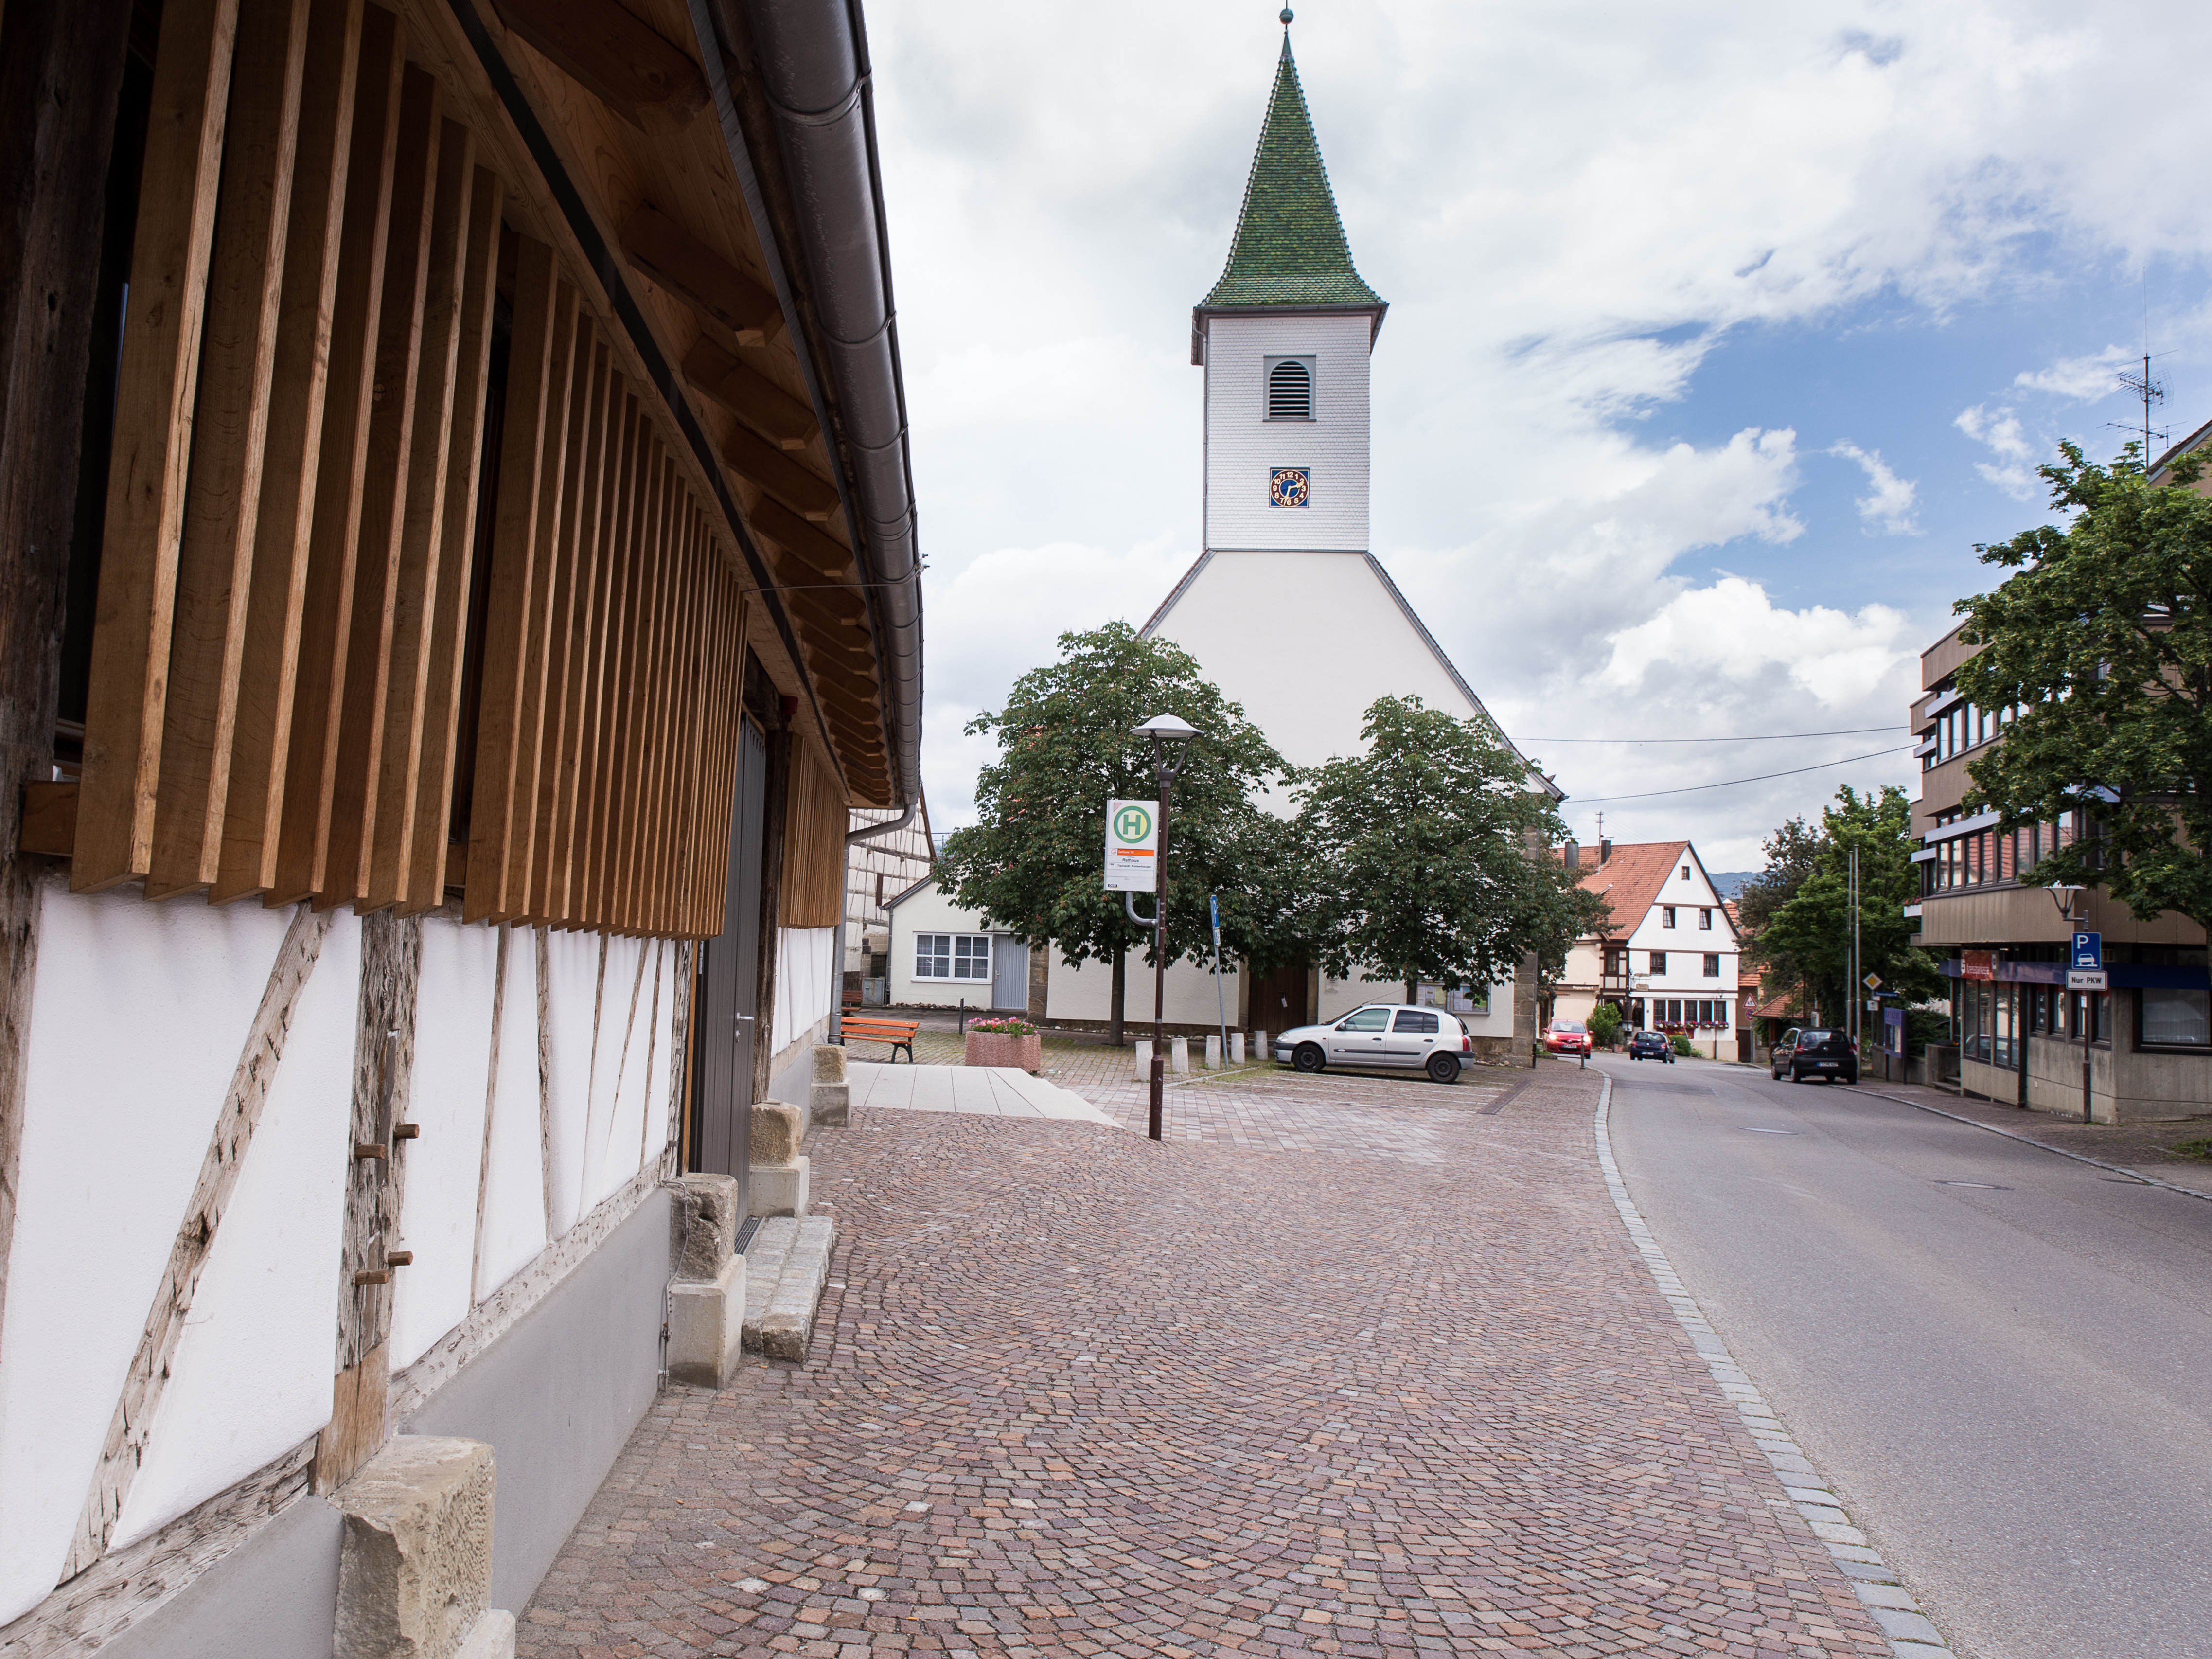  Kelter, Kirche, Rathaus 